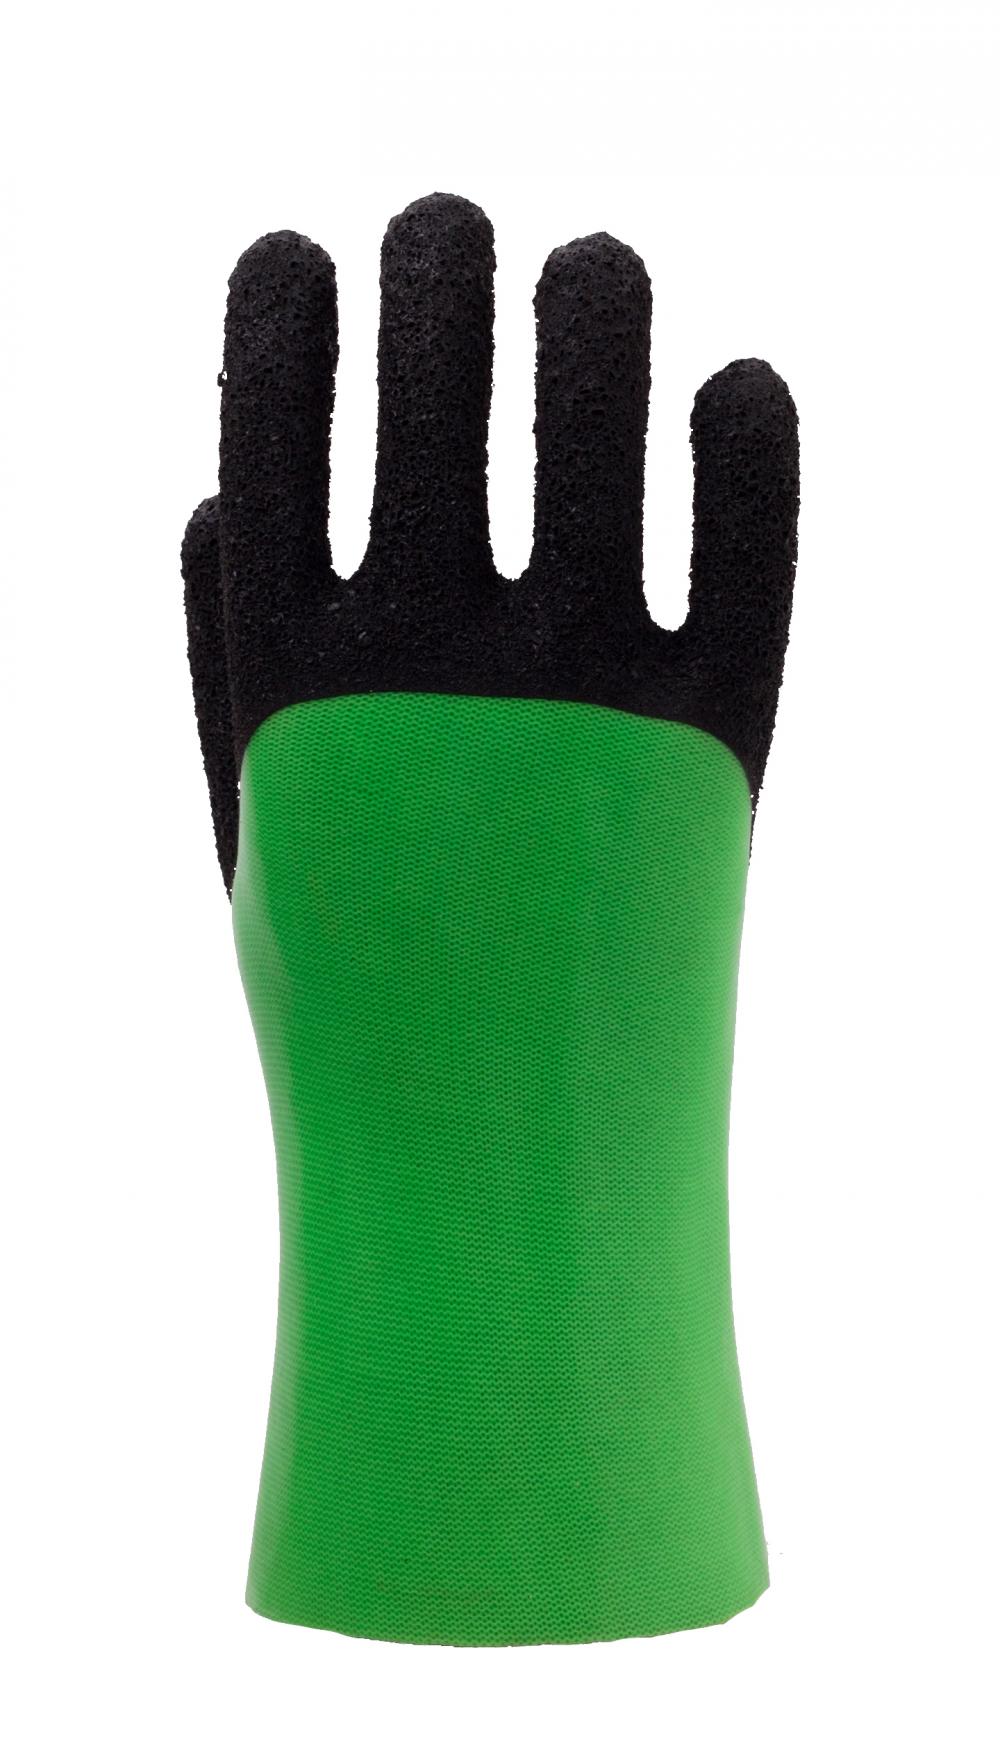 Флуоресцентные перчатки GreenPVC. Отделка из черной пены